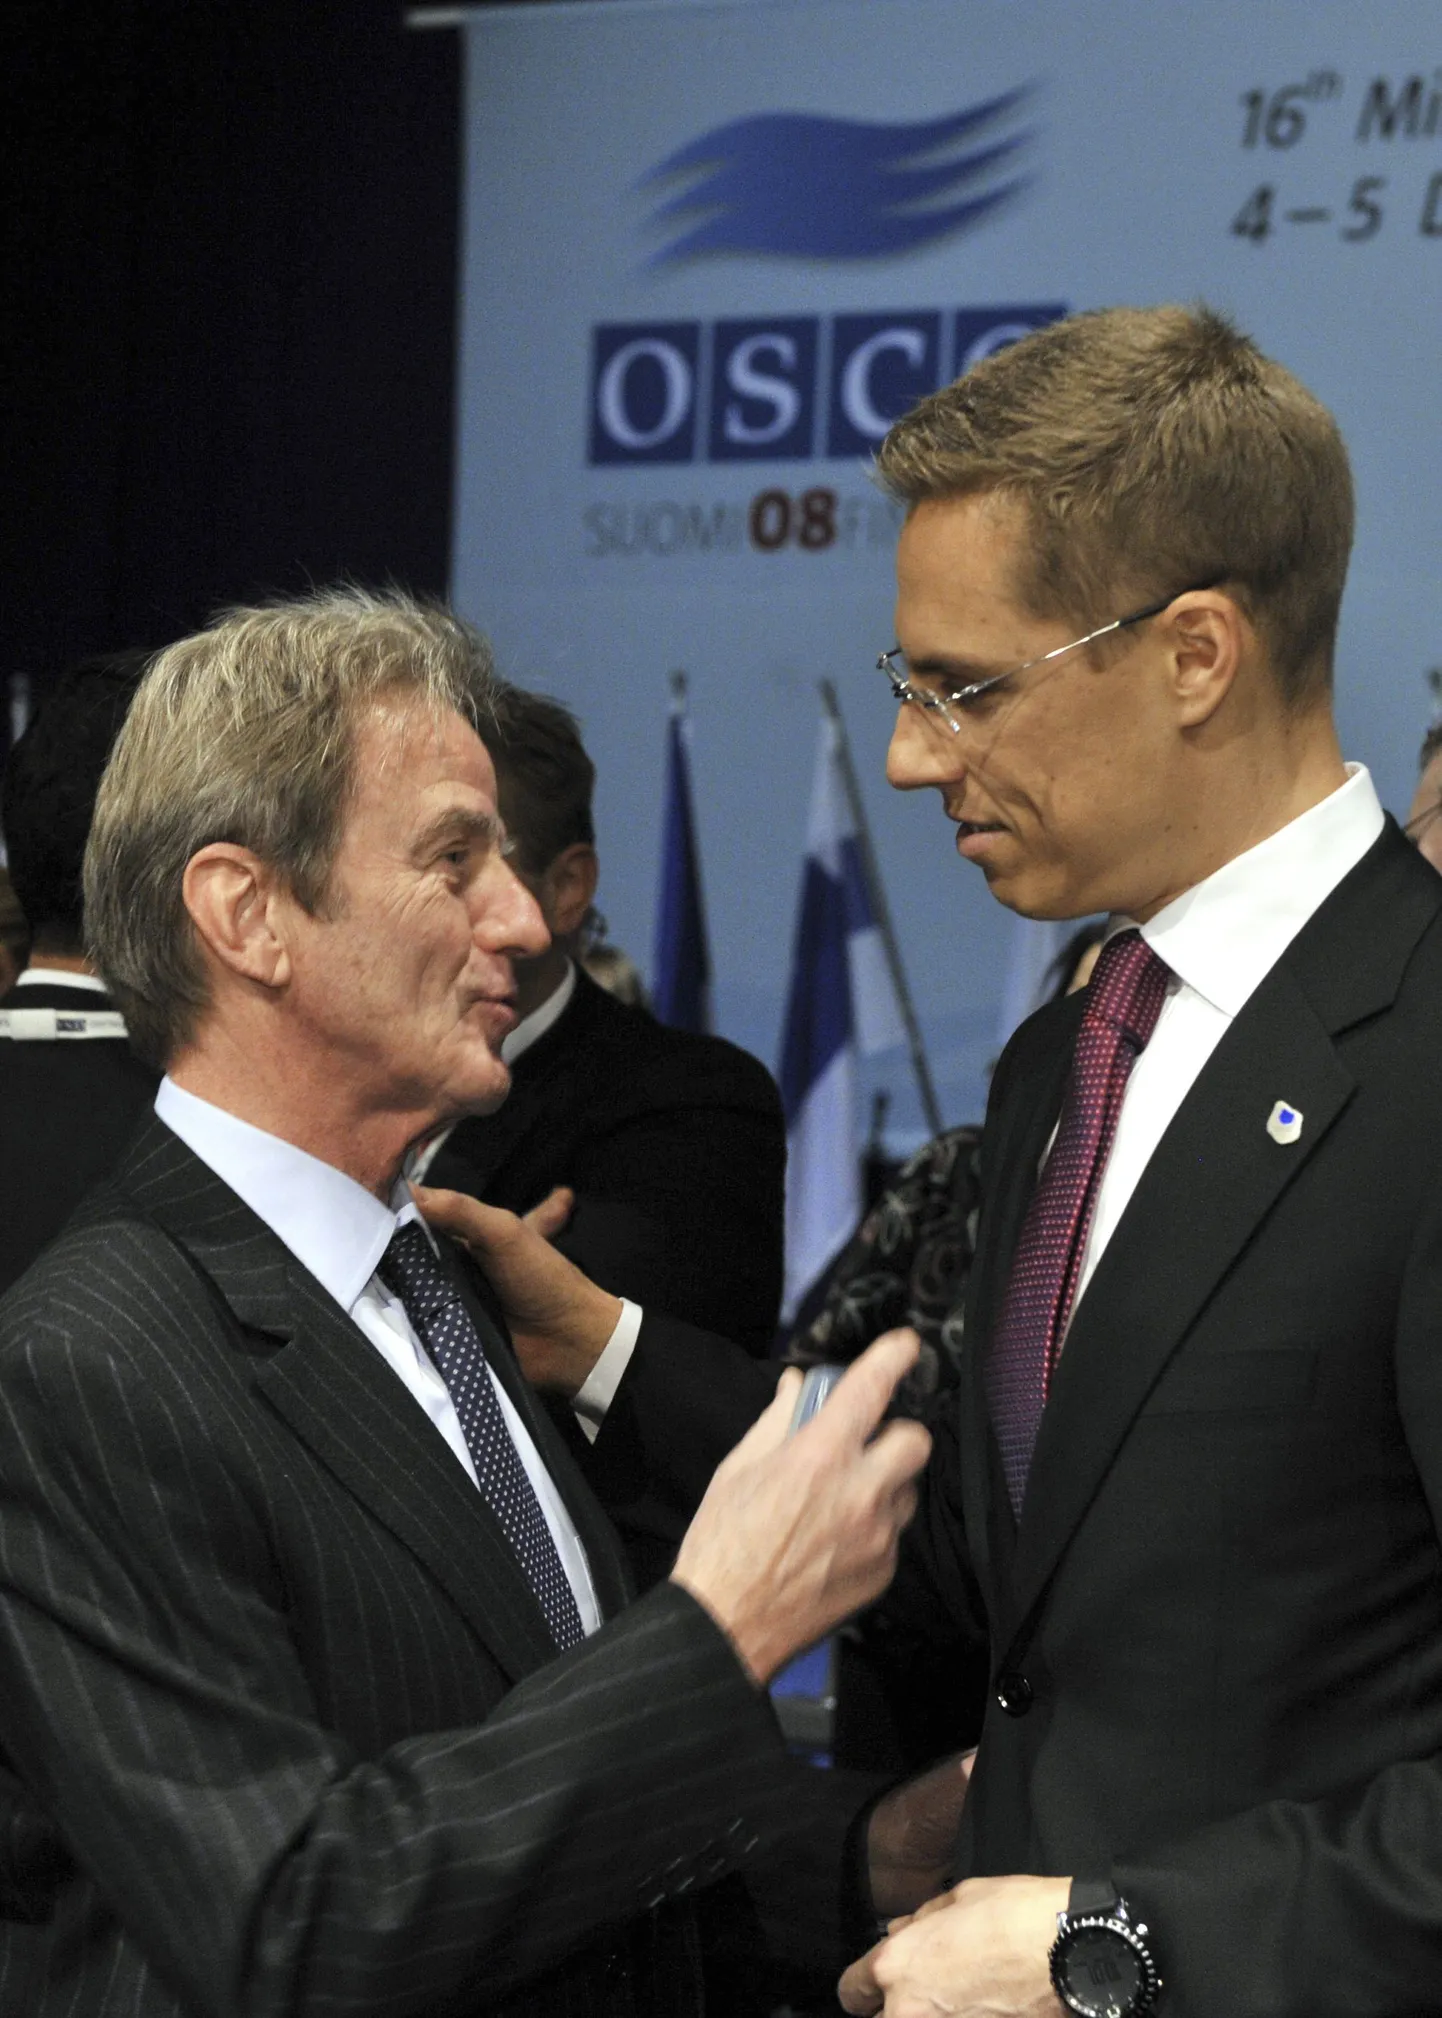 Prantsuse peaminister Bernard Kouchner (vasakul) ja tema Soome kolleeg Alexander Stubb vestlemas enne OSCE ministrite nõukogu algust.